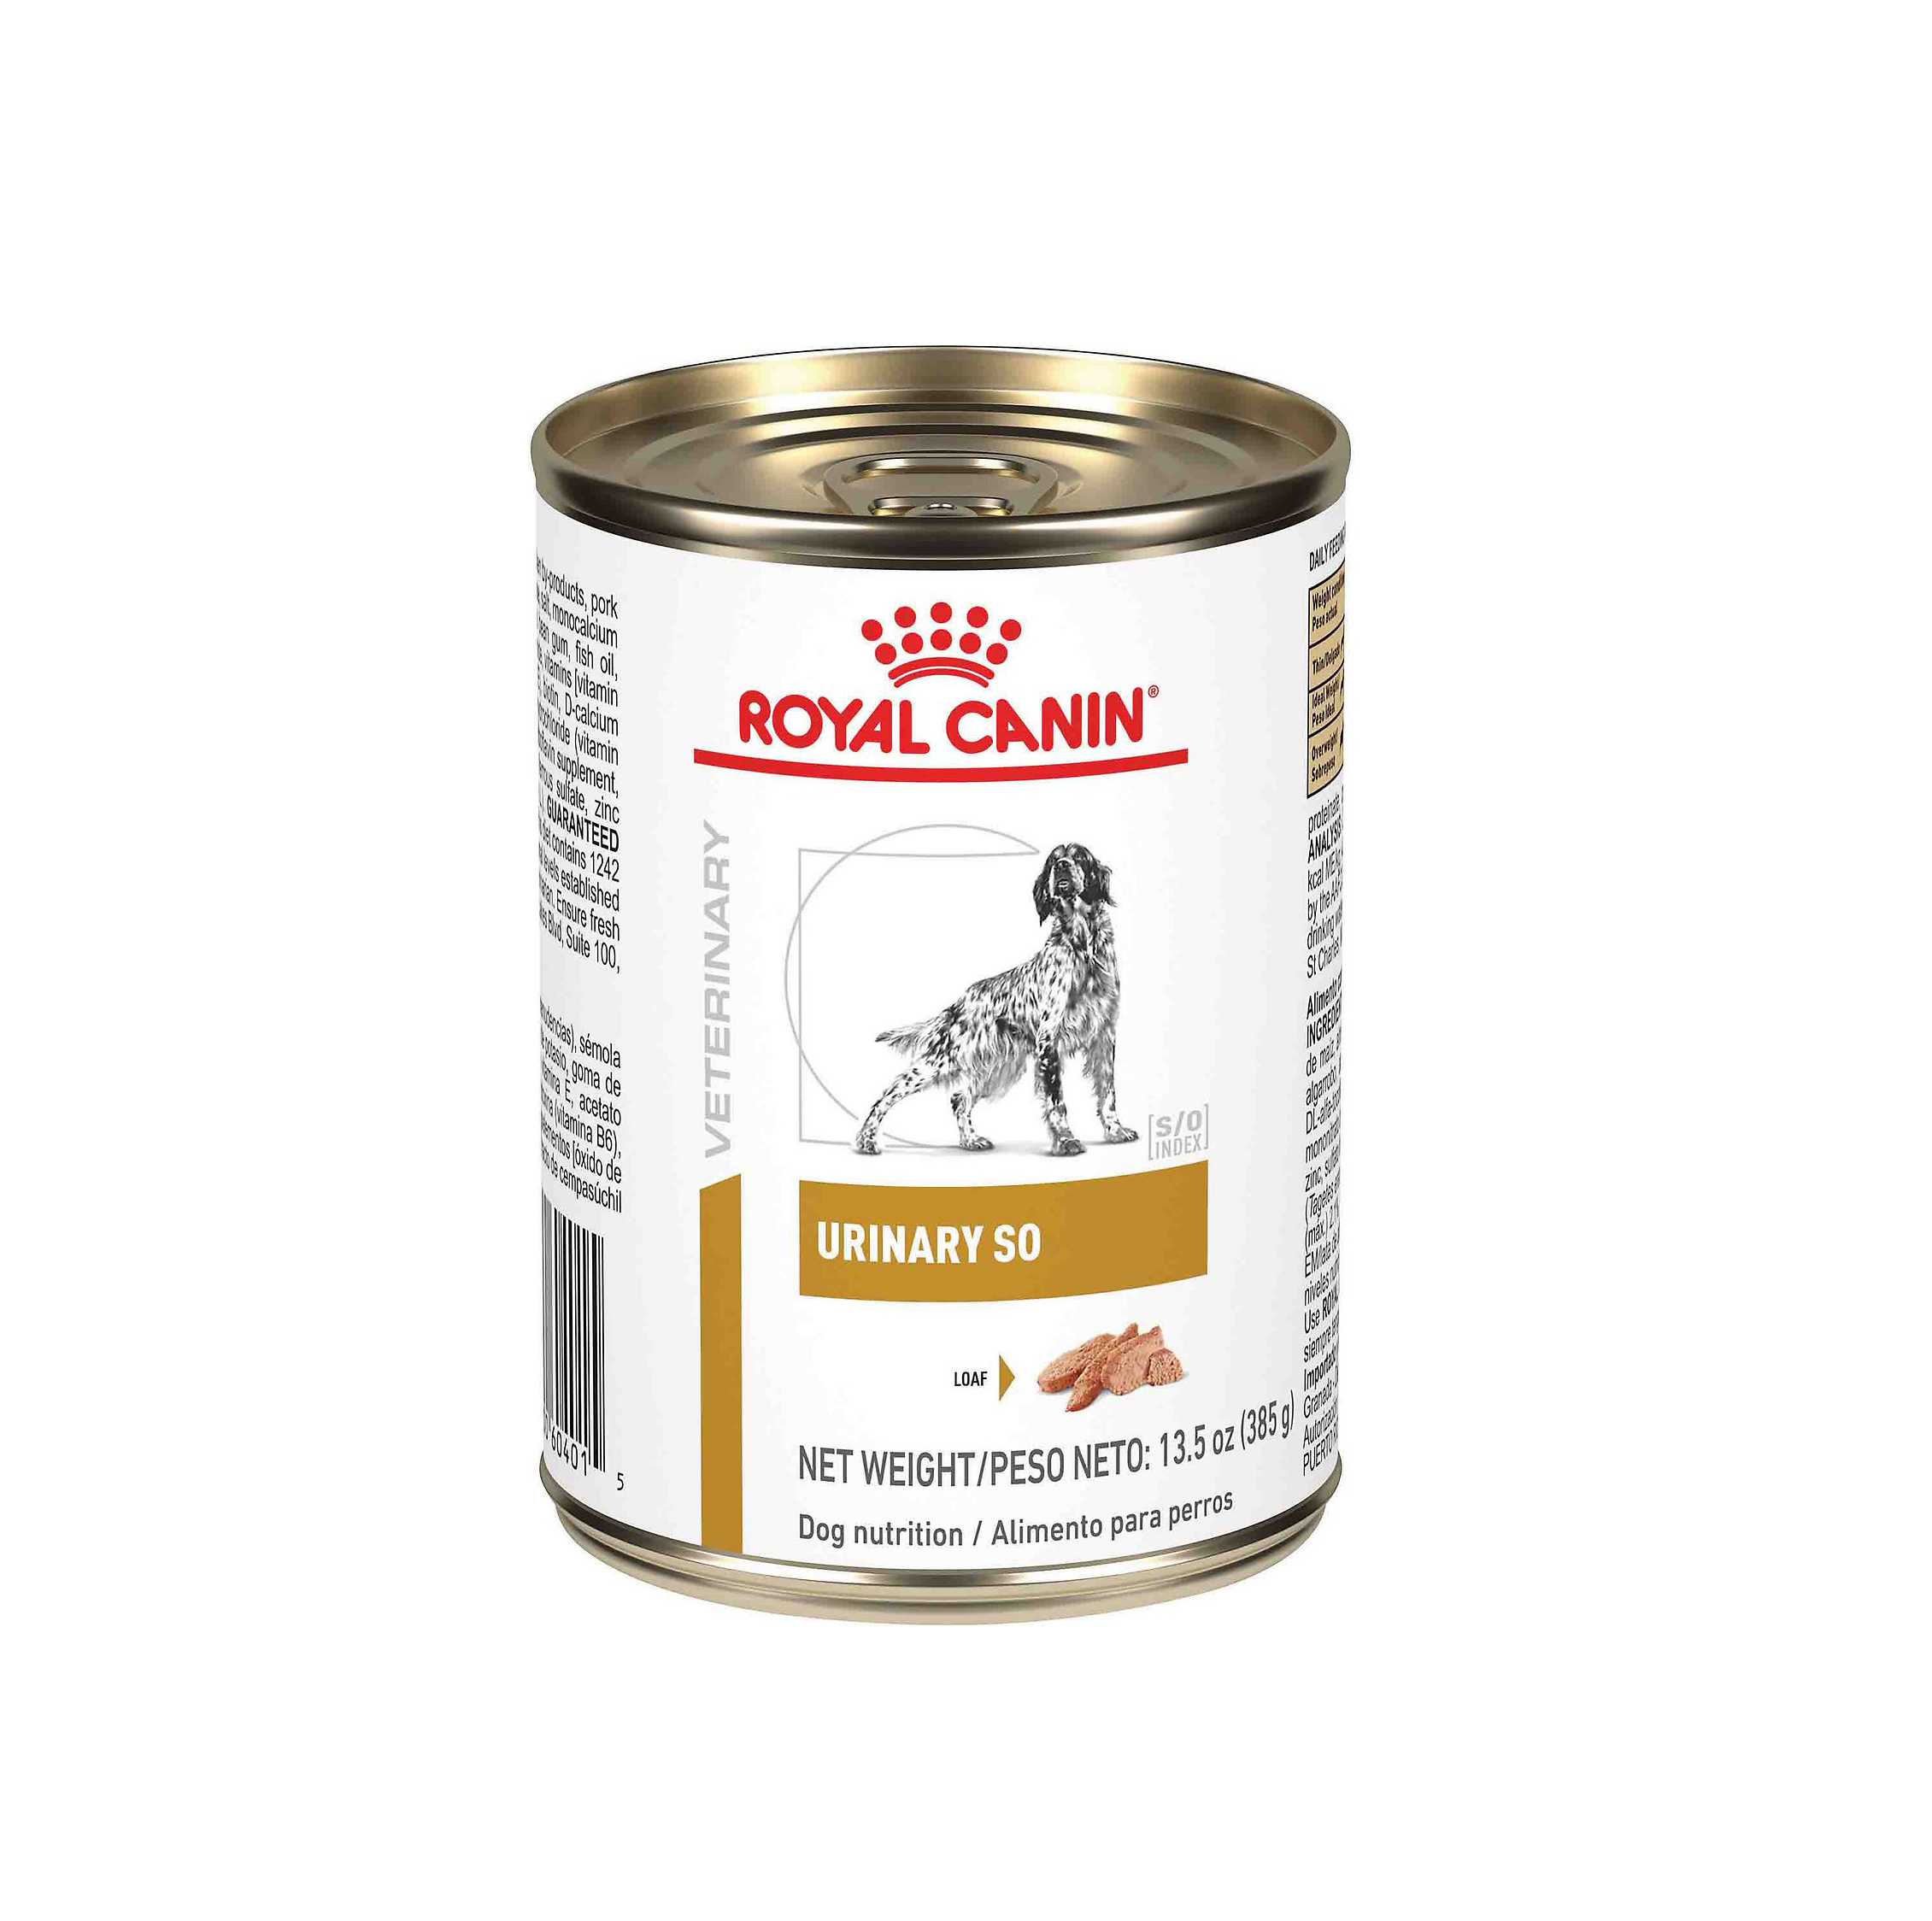 Royal Canin Urinary S/O - Pate cho chó bị sỏi thận 400g